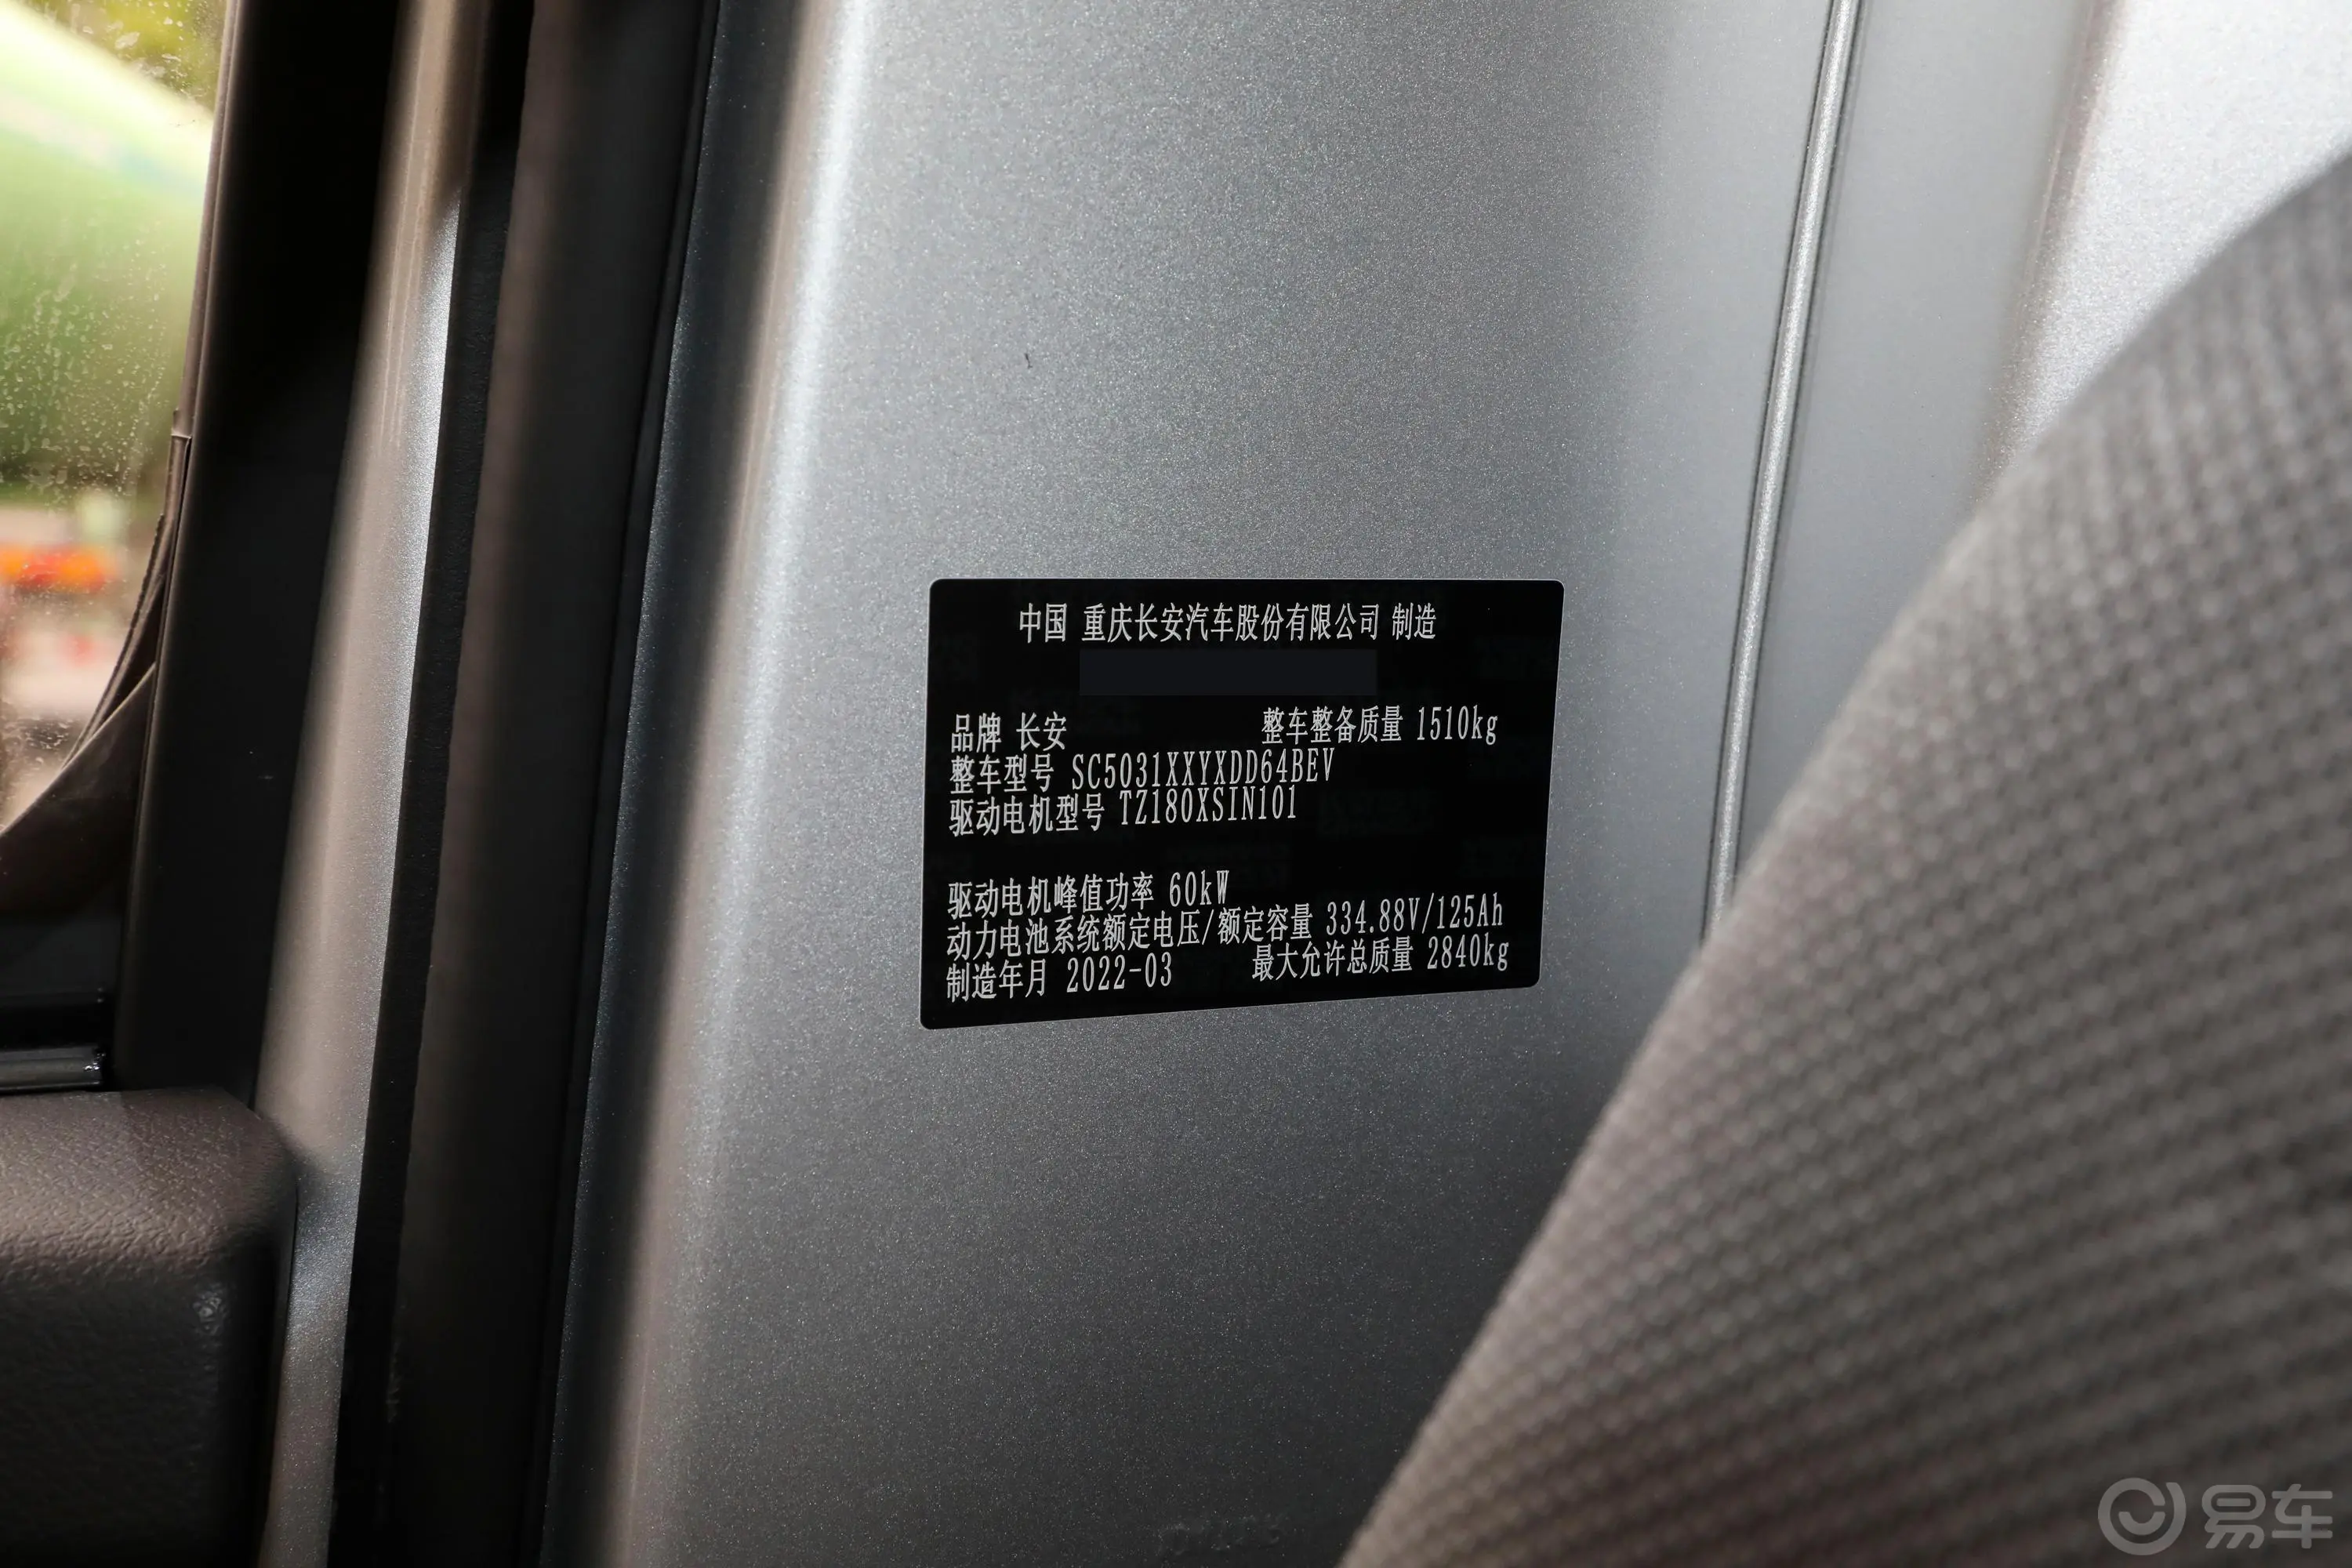 跨越王X1 EV纯电动 SC5031XXYXDD64BEV 厢式车车辆信息铭牌